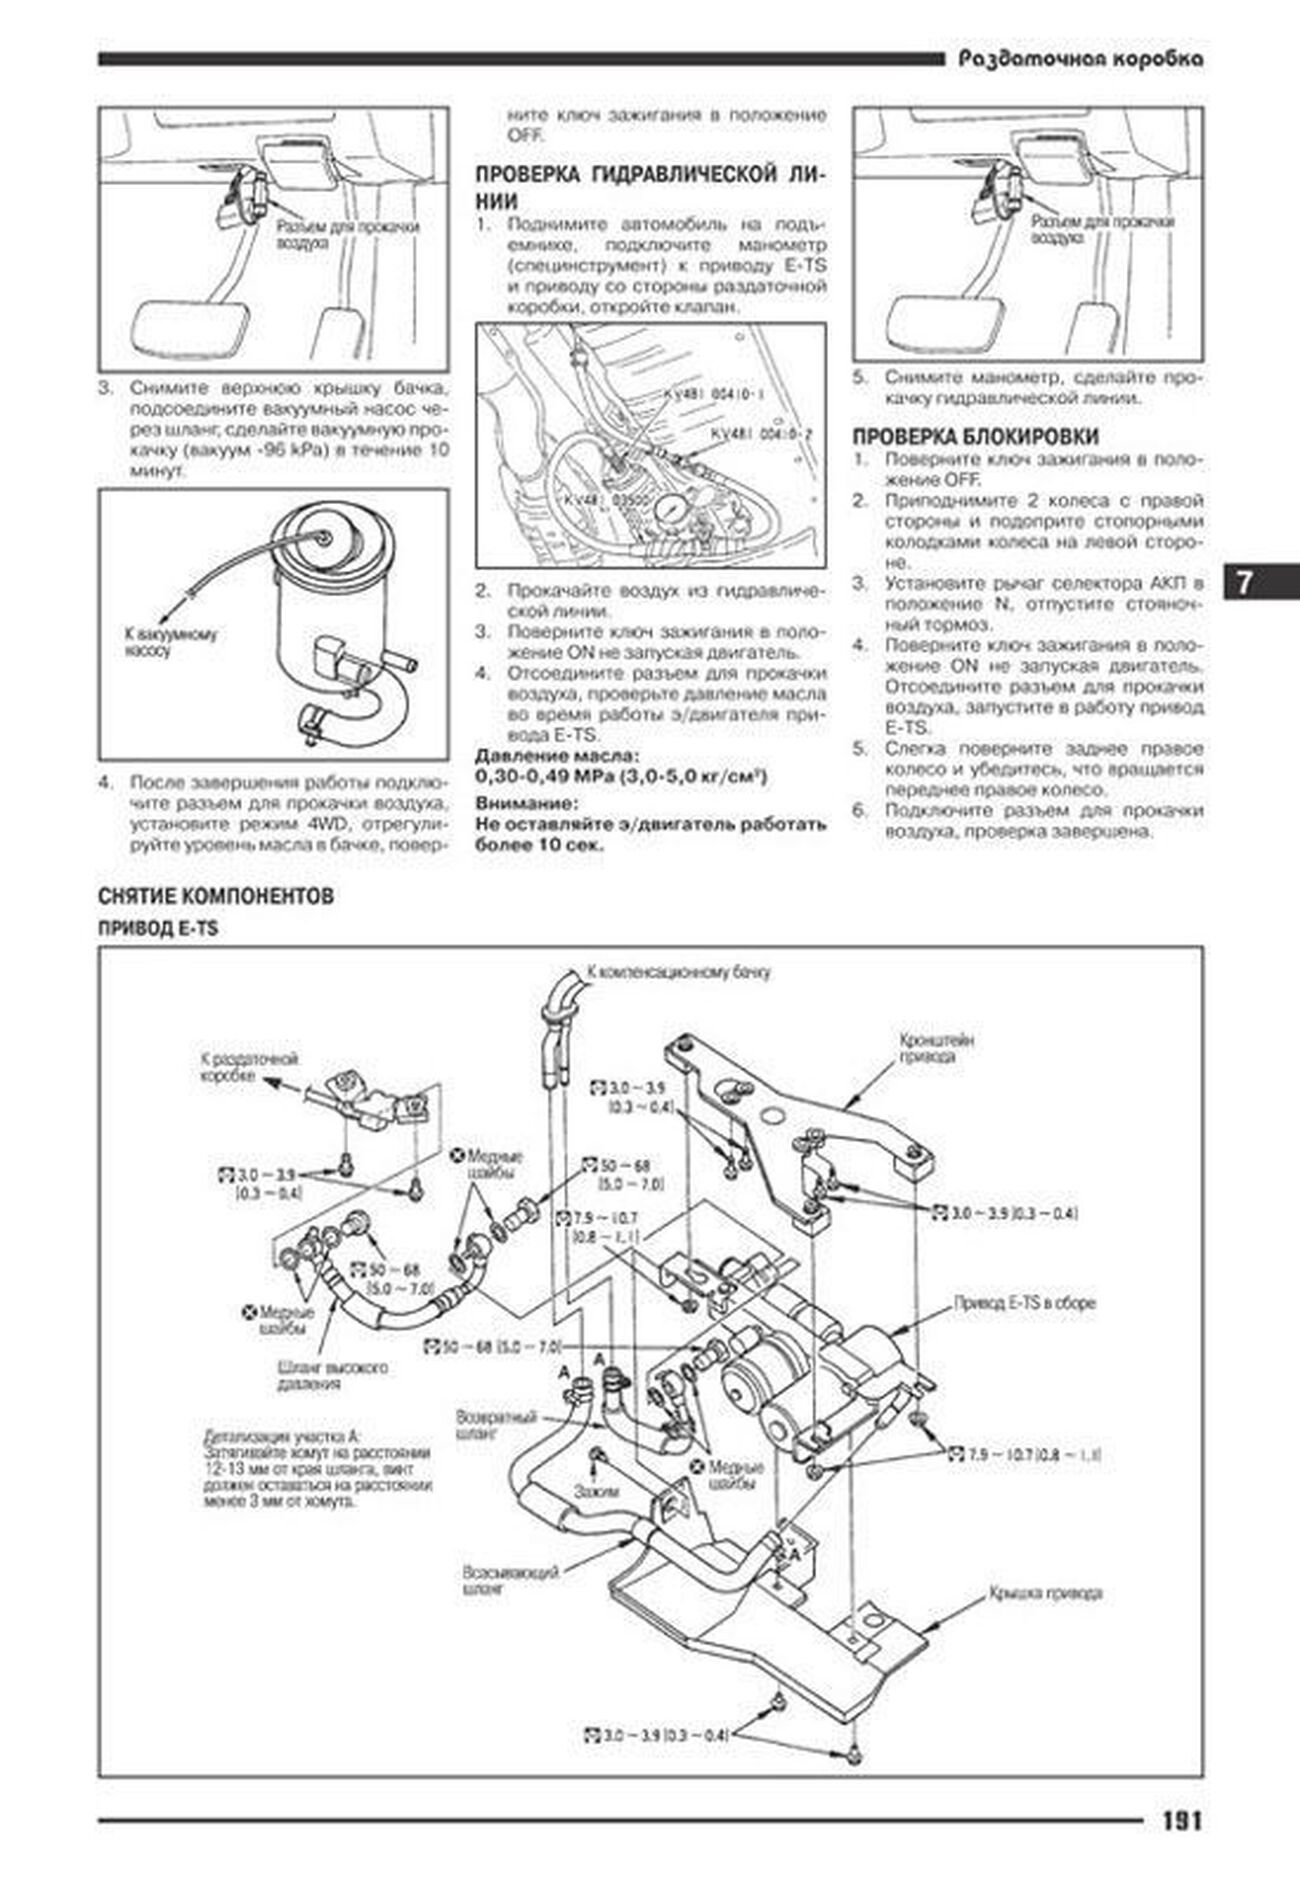 Книга: NISSAN SKYLINE R34 (б) 1998-2001 г.в., рем., экспл., то | Автонавигатор